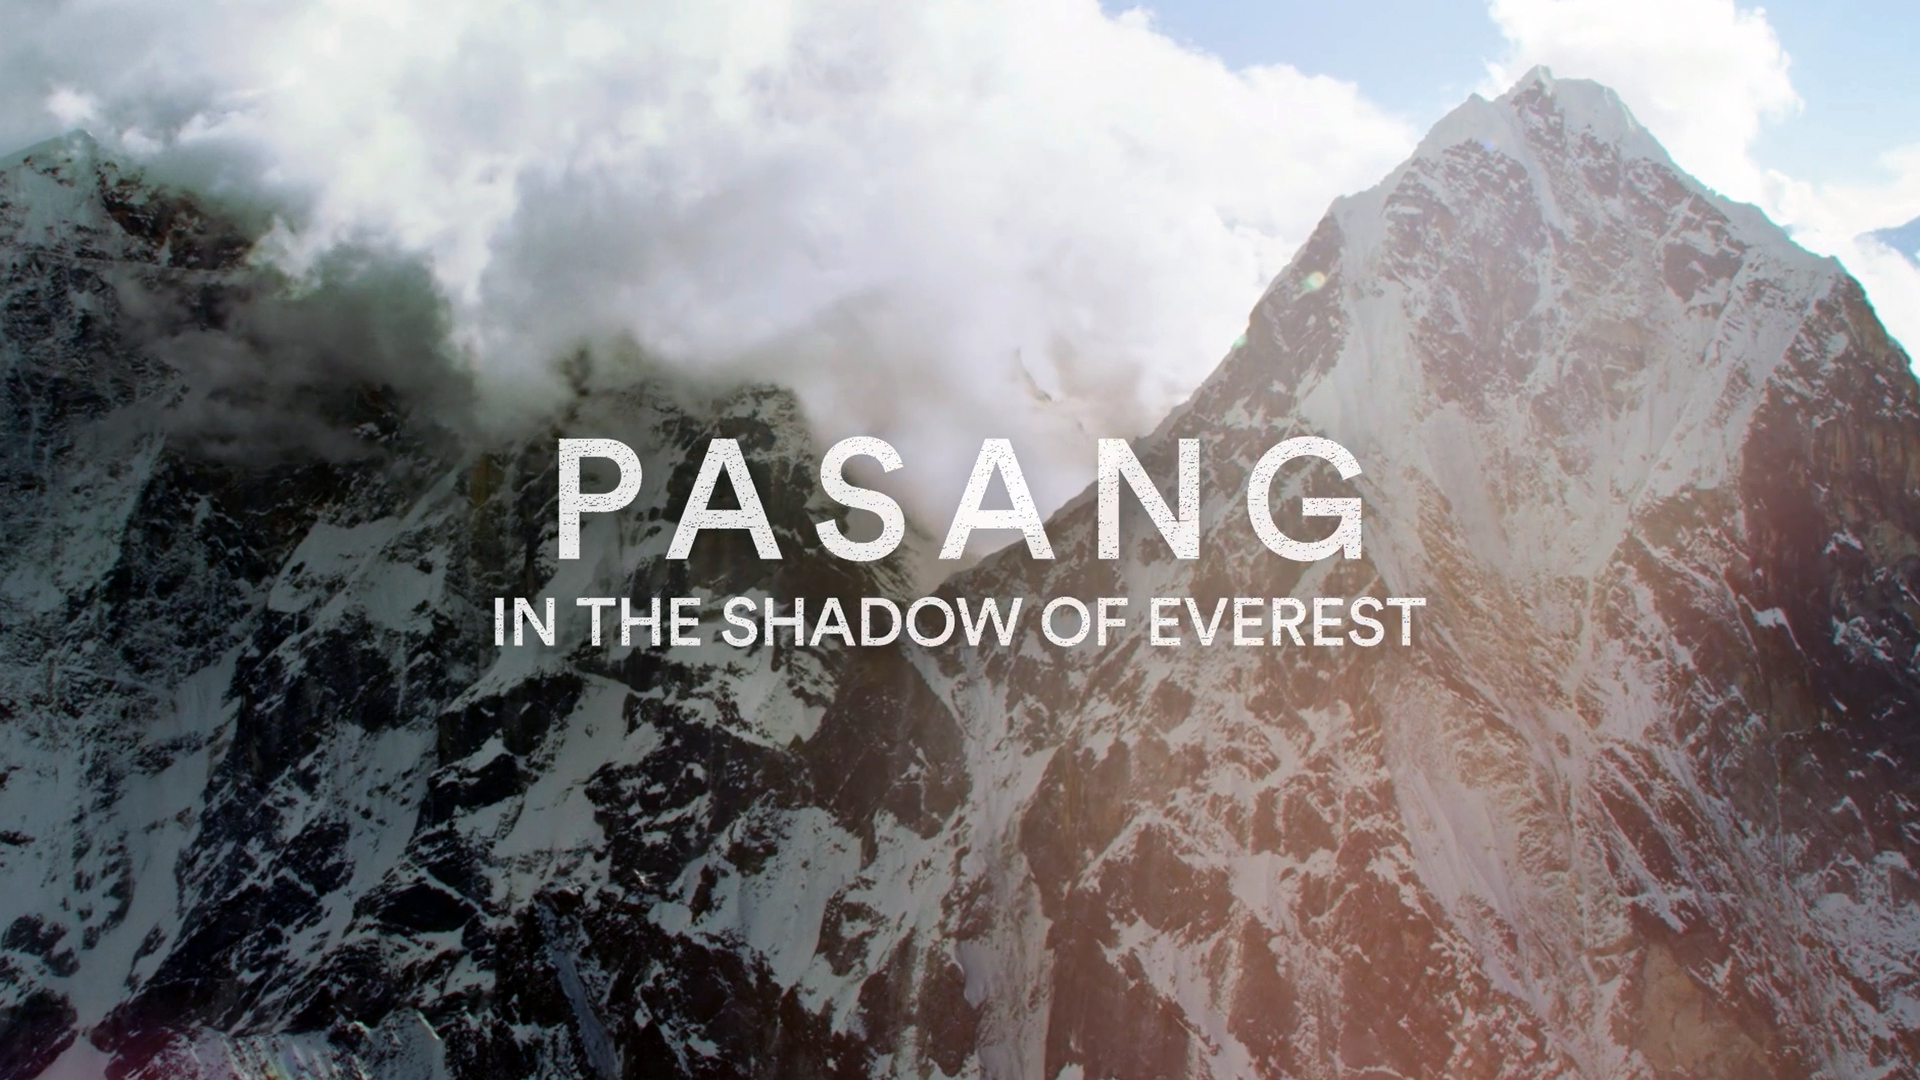 राष्ट्रिय विभूति एवं पहिलो नेपाली महिला सगरमाथा आरोही पासाङल्हामुको जीवनीमा आधारित फिल्म प्रदर्शन हुँदै